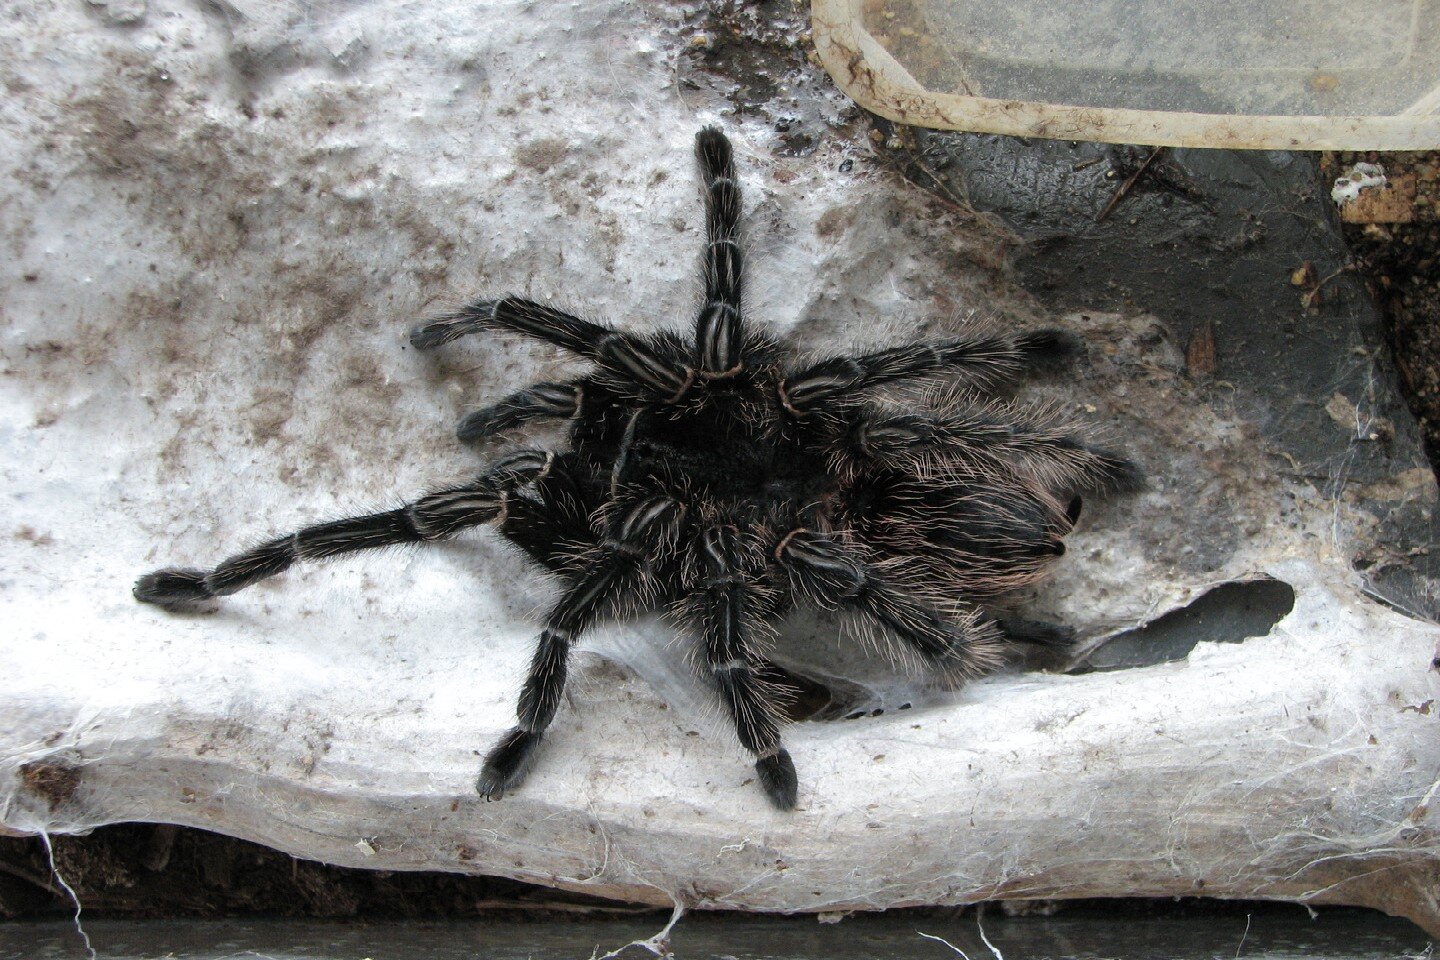 Fotografia przedstawia pająka ptasznika. Zwierzę jest czarne, pokryte szczecinkami. Porusza się na czterech parach długich odnóży. Przednia część ciała jest po prawej stronie zdjęcia. Z przodu ciała znajdują się dwie pary odnóży służących do chwytania pokarmu.